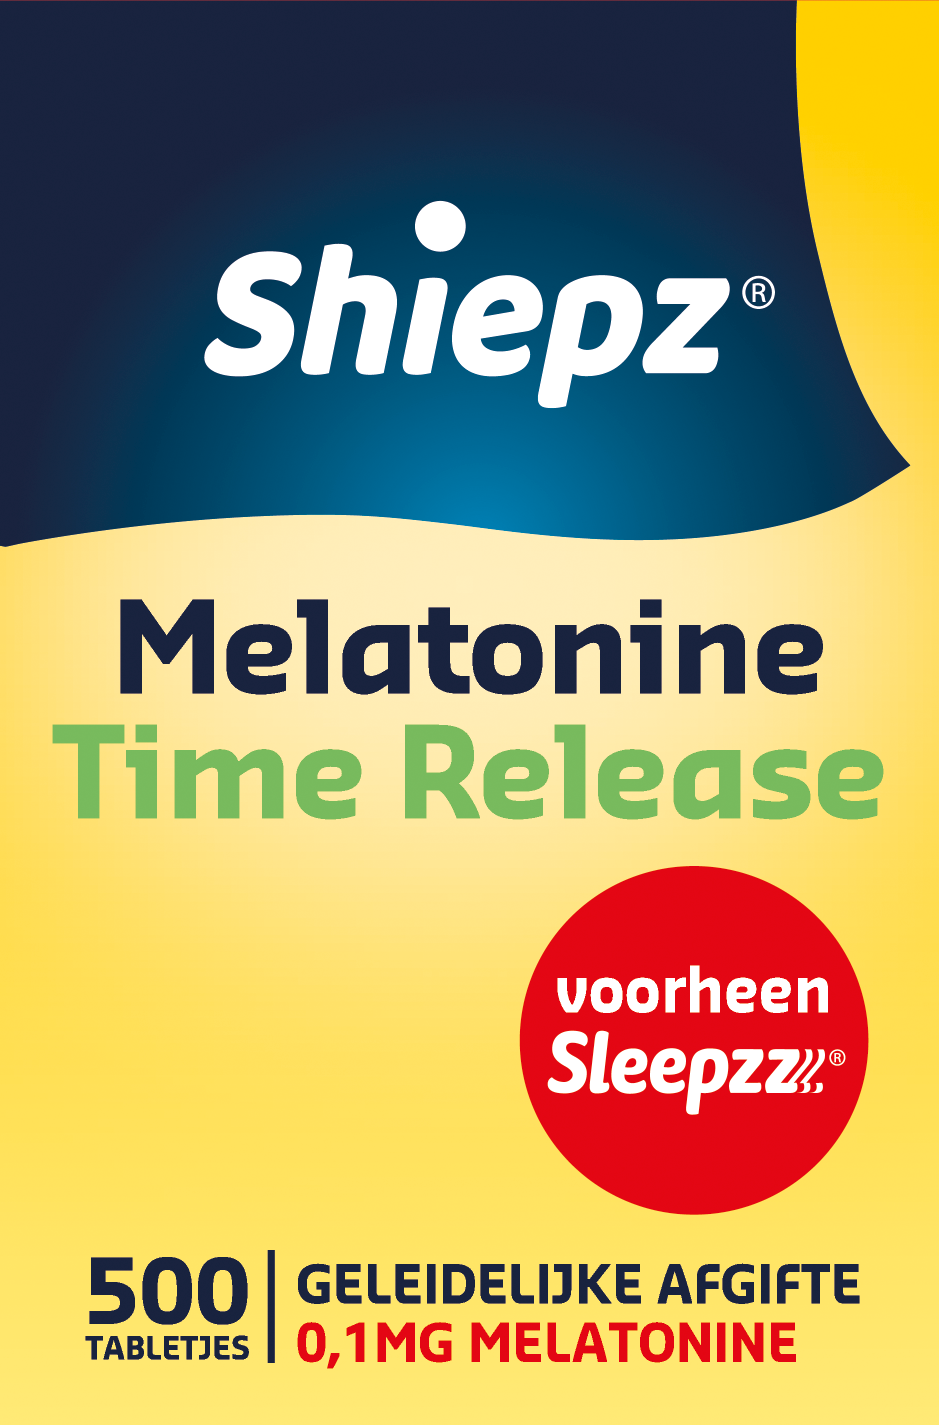 Shiepz melatonine time release tabletjes bevat per tabletje 0.1 milligram melatonine. elke tabletje bevat een ...